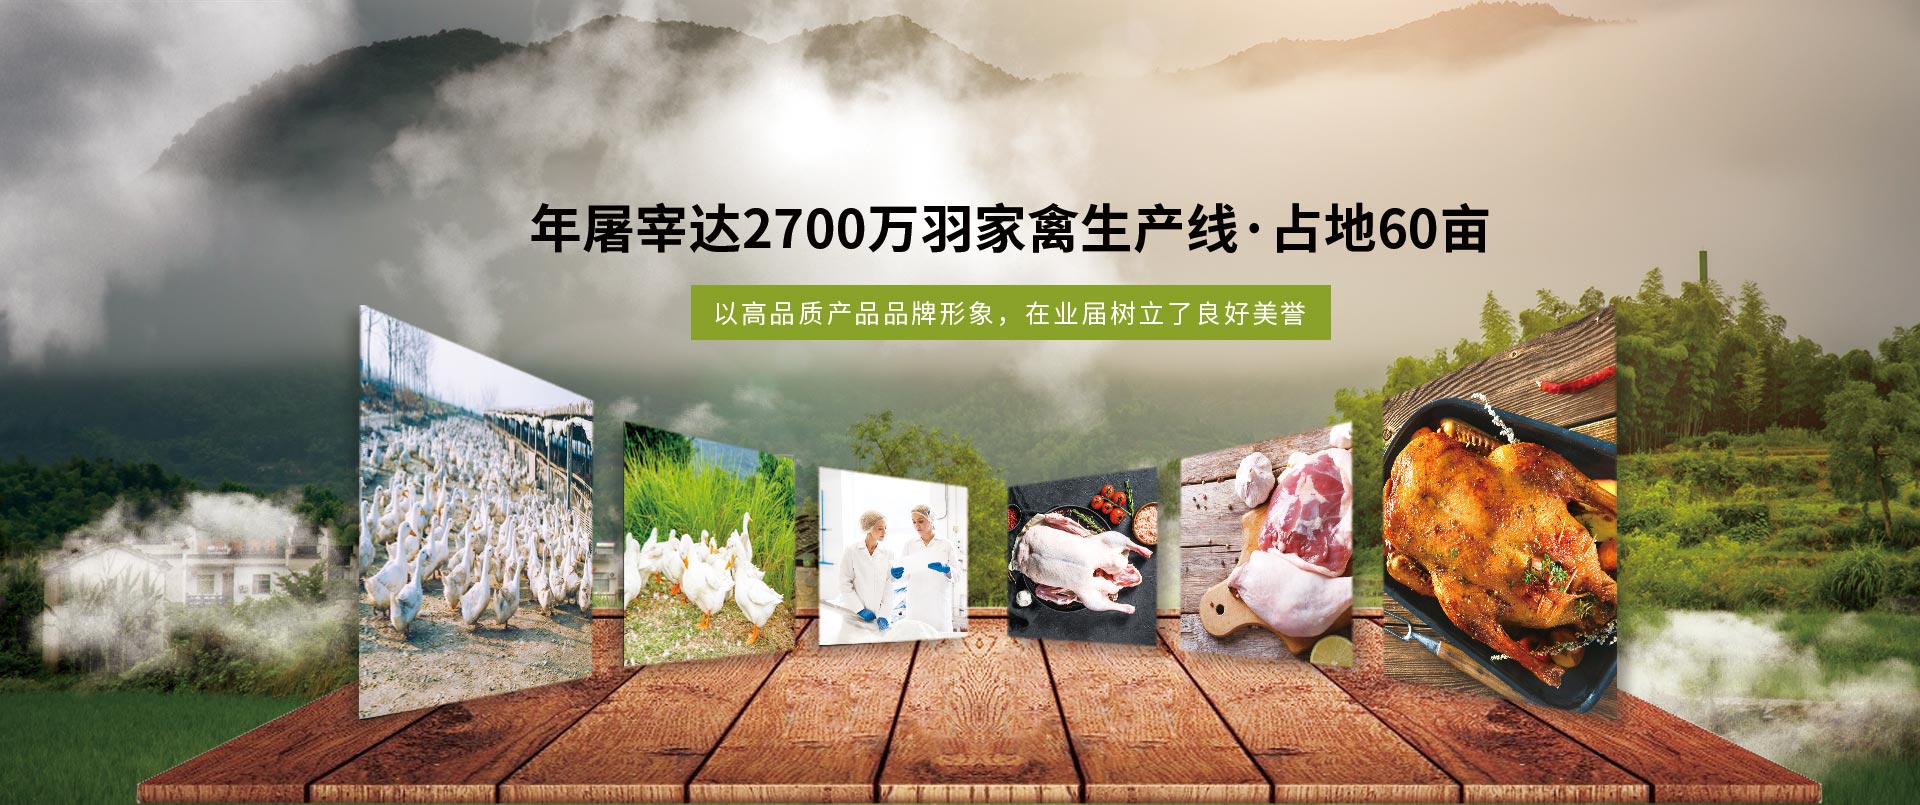 丽佳农牧-年屠宰2700万羽家禽生产线，占地60亩